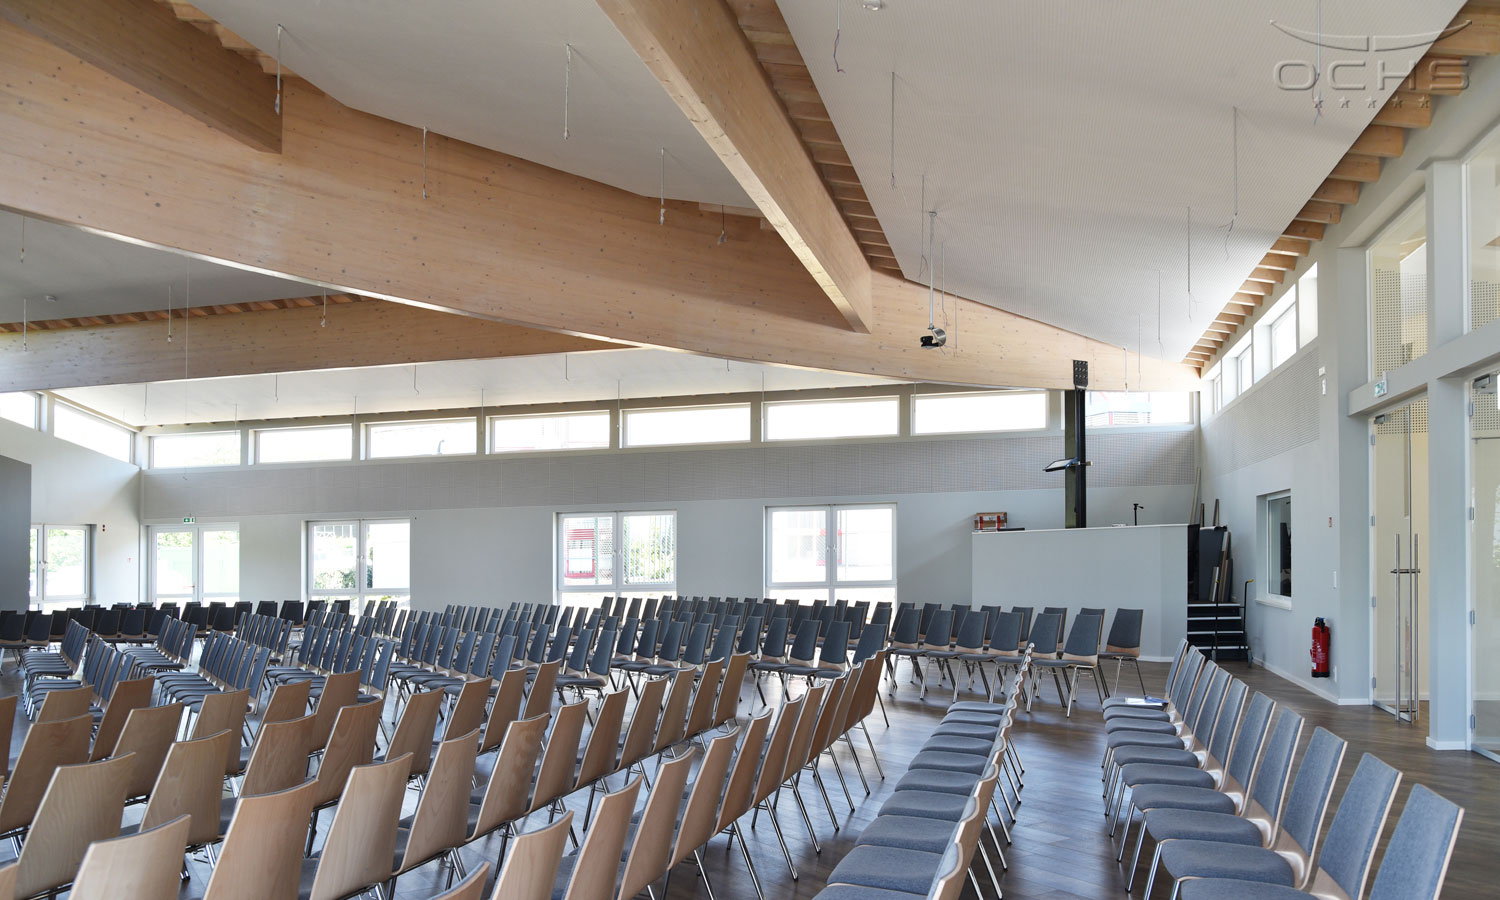 FeG Church facilities in Simmern